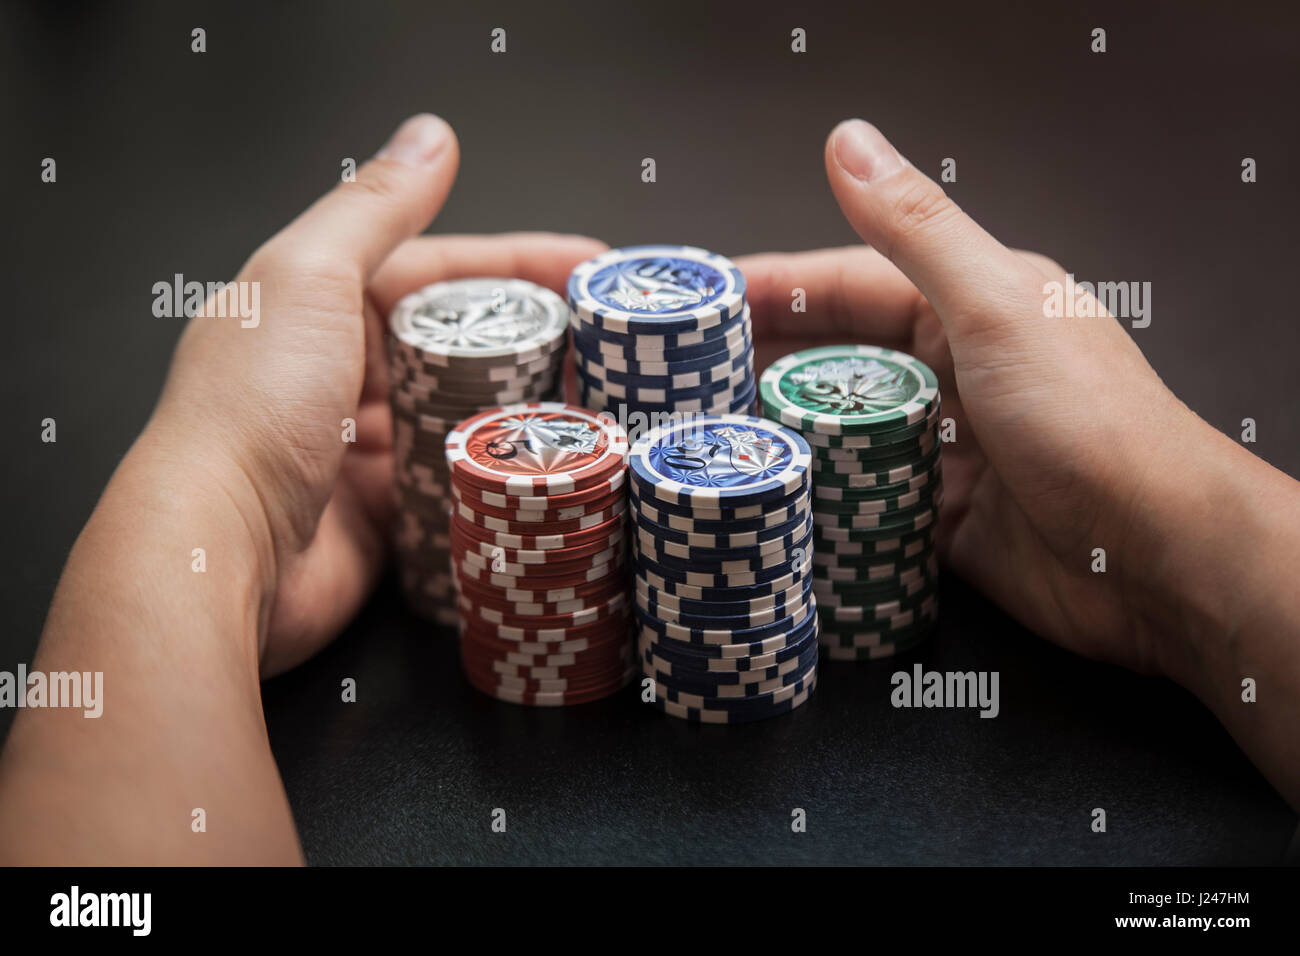 Tirar de las manos del hombre a sí mismos un gran montón de fichas de póquer Foto de stock